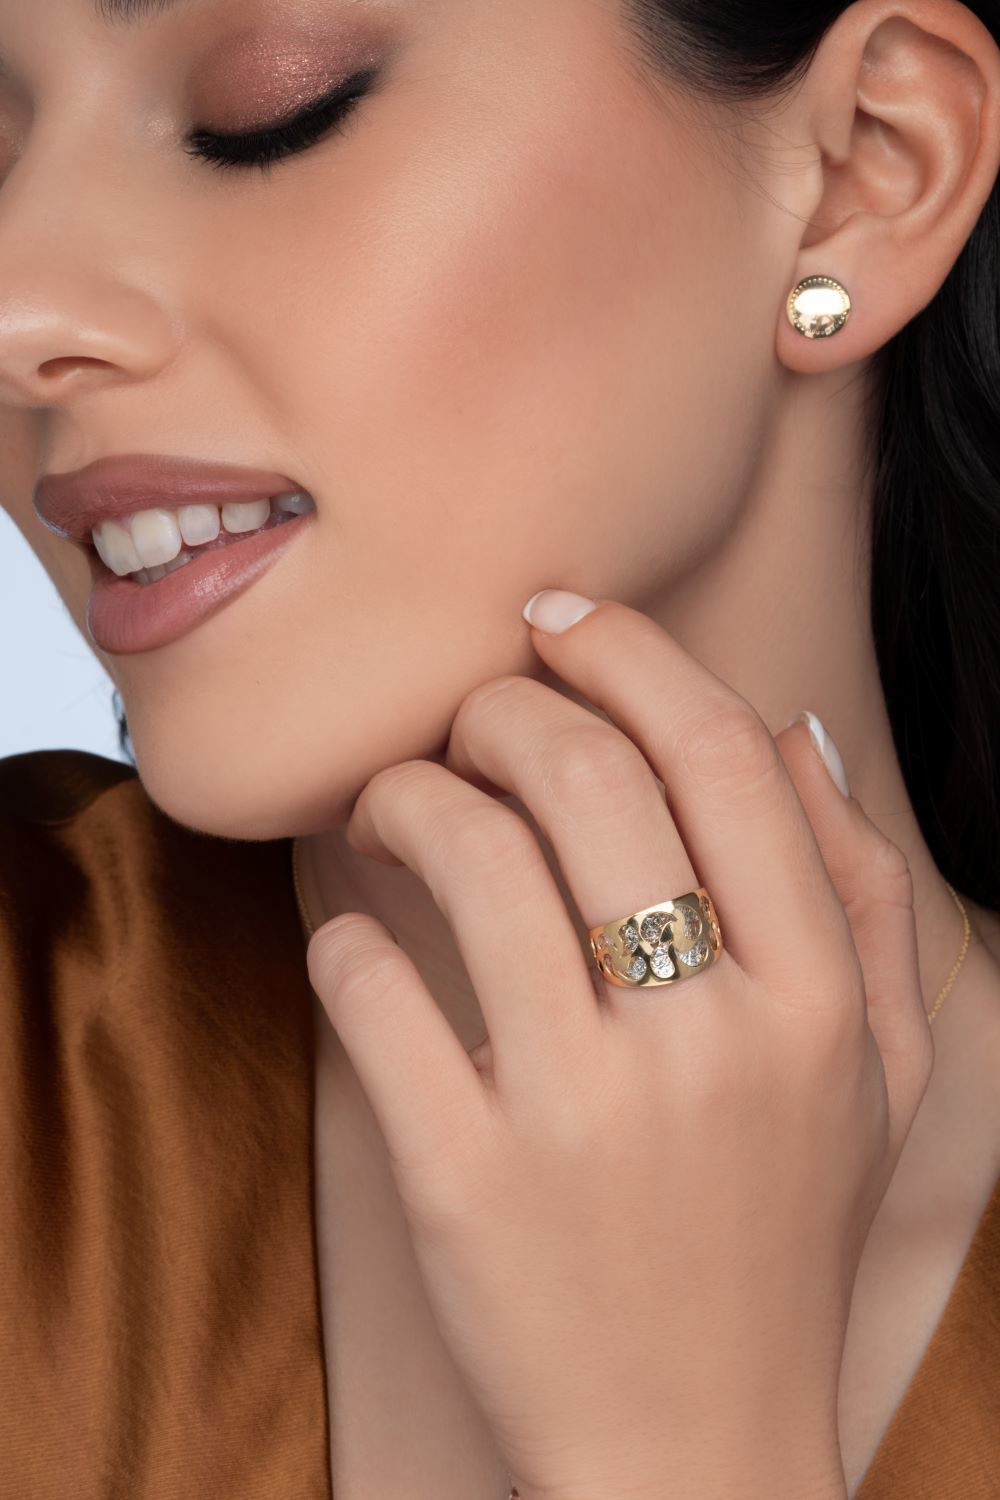 Δαχτυλίδι Arabesque από χρυσό και λευκό χρυσό 18K